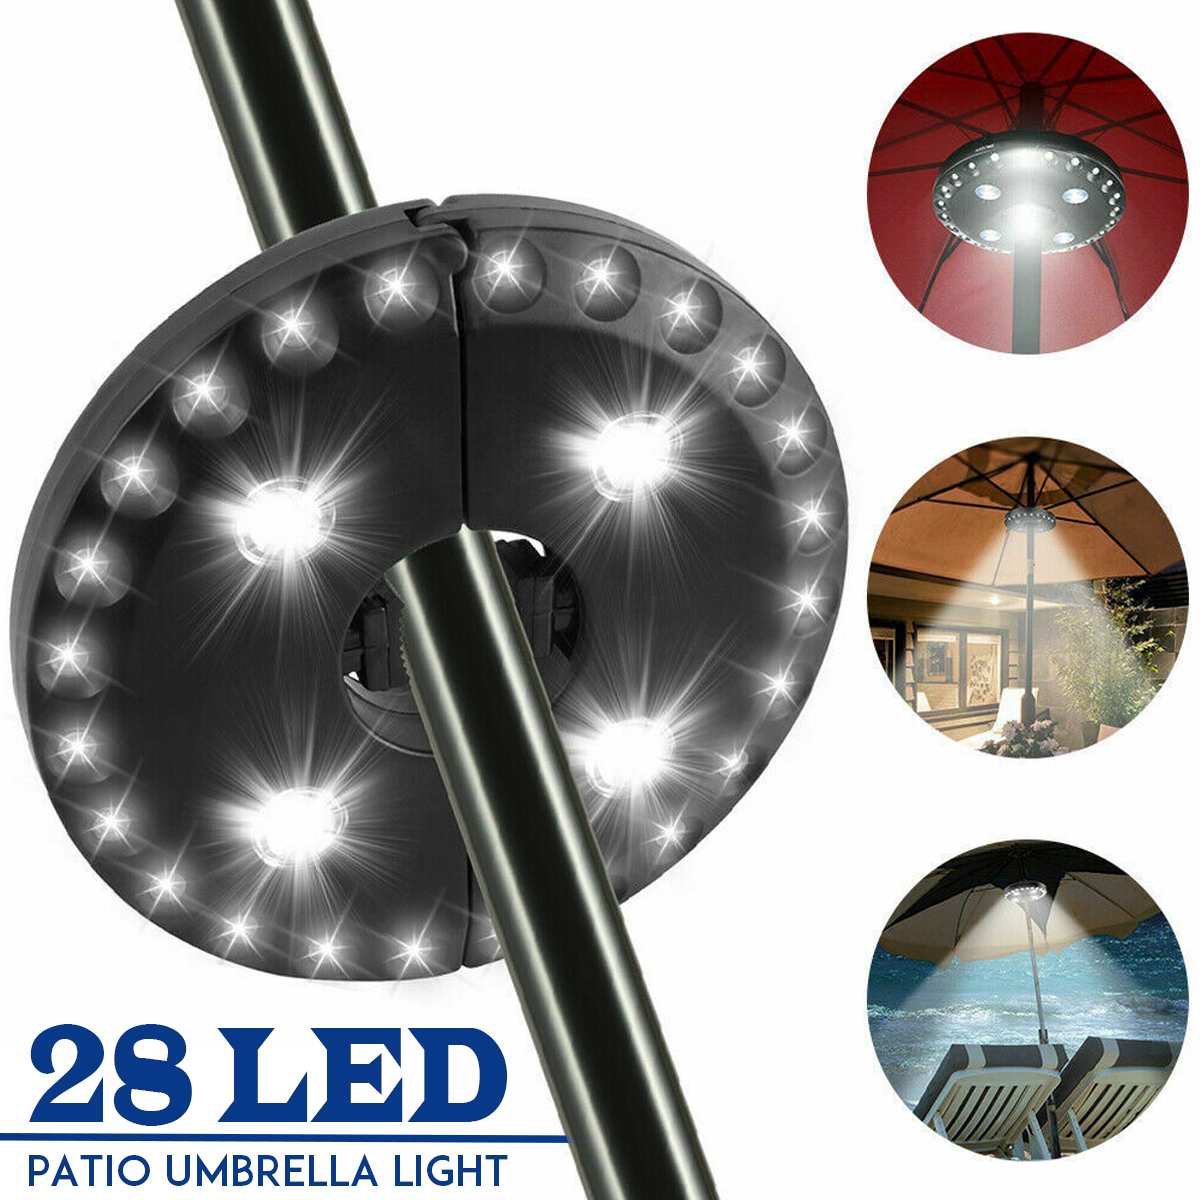 IllumiBrella LED Umbrella Light™